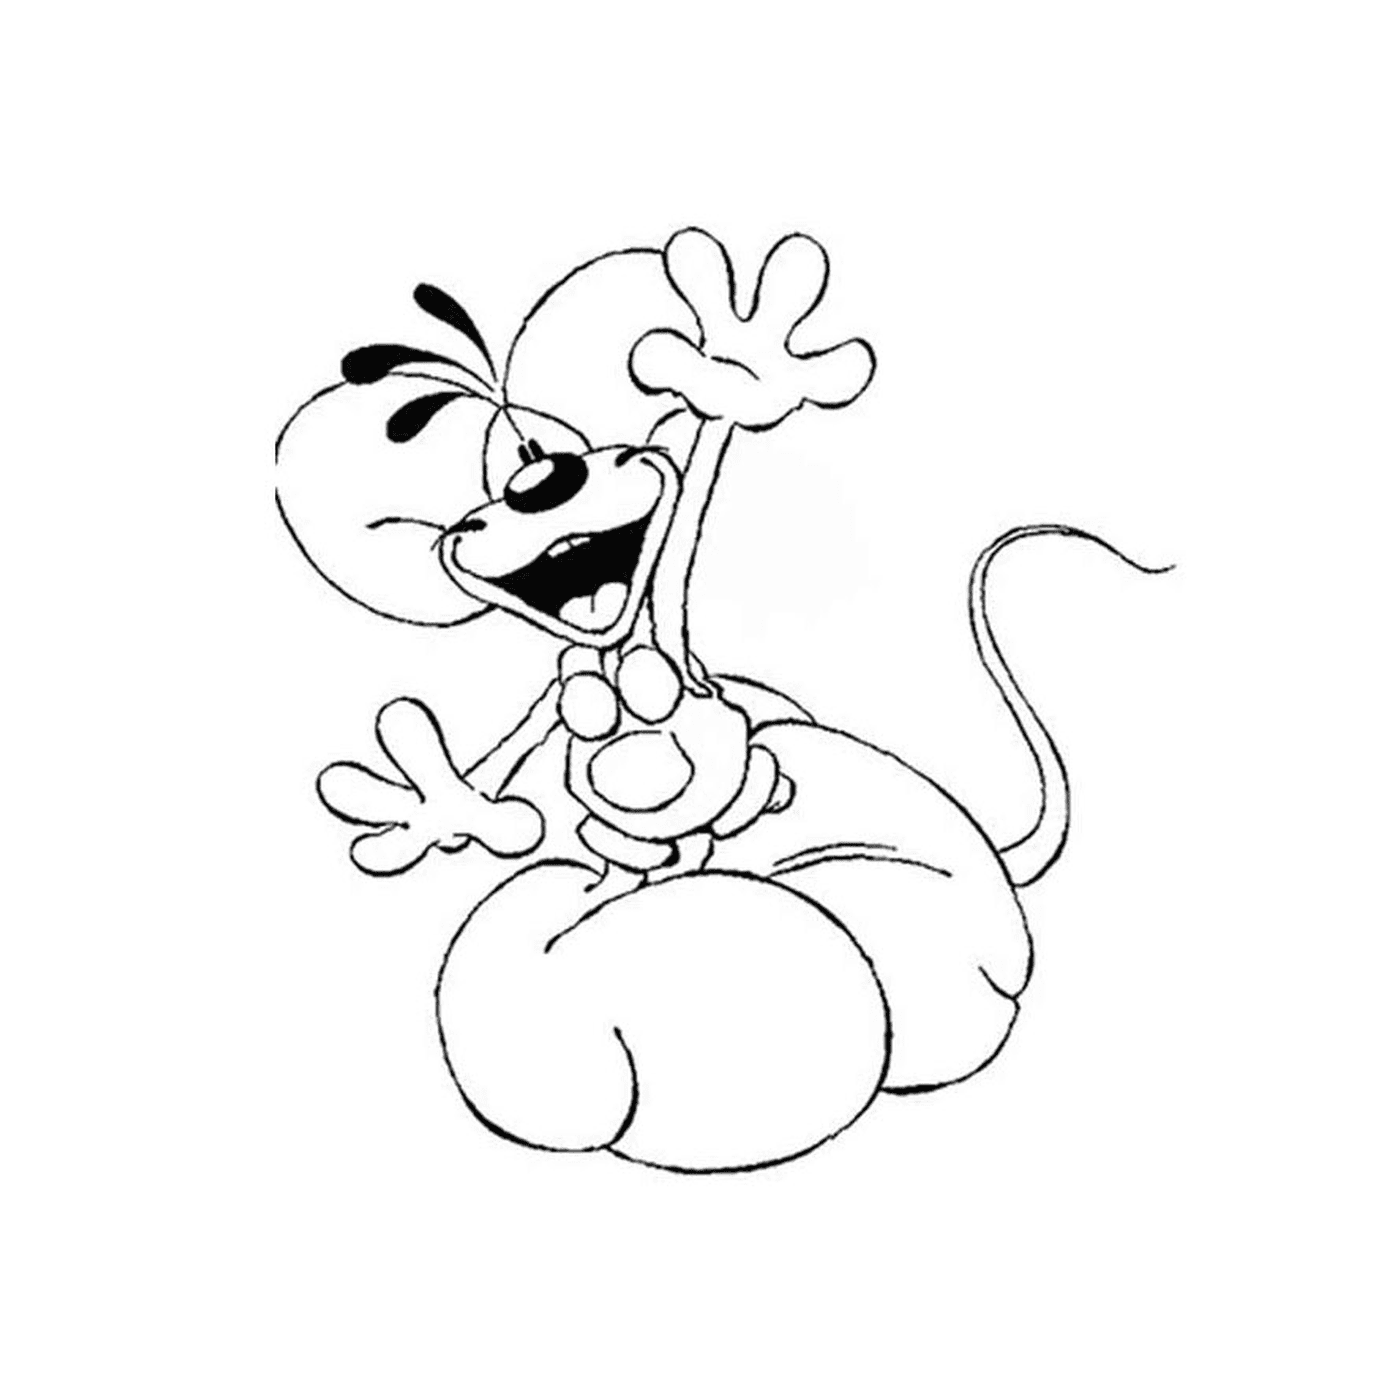   Une souris de dessin animé assise sur ses pattes arrière 